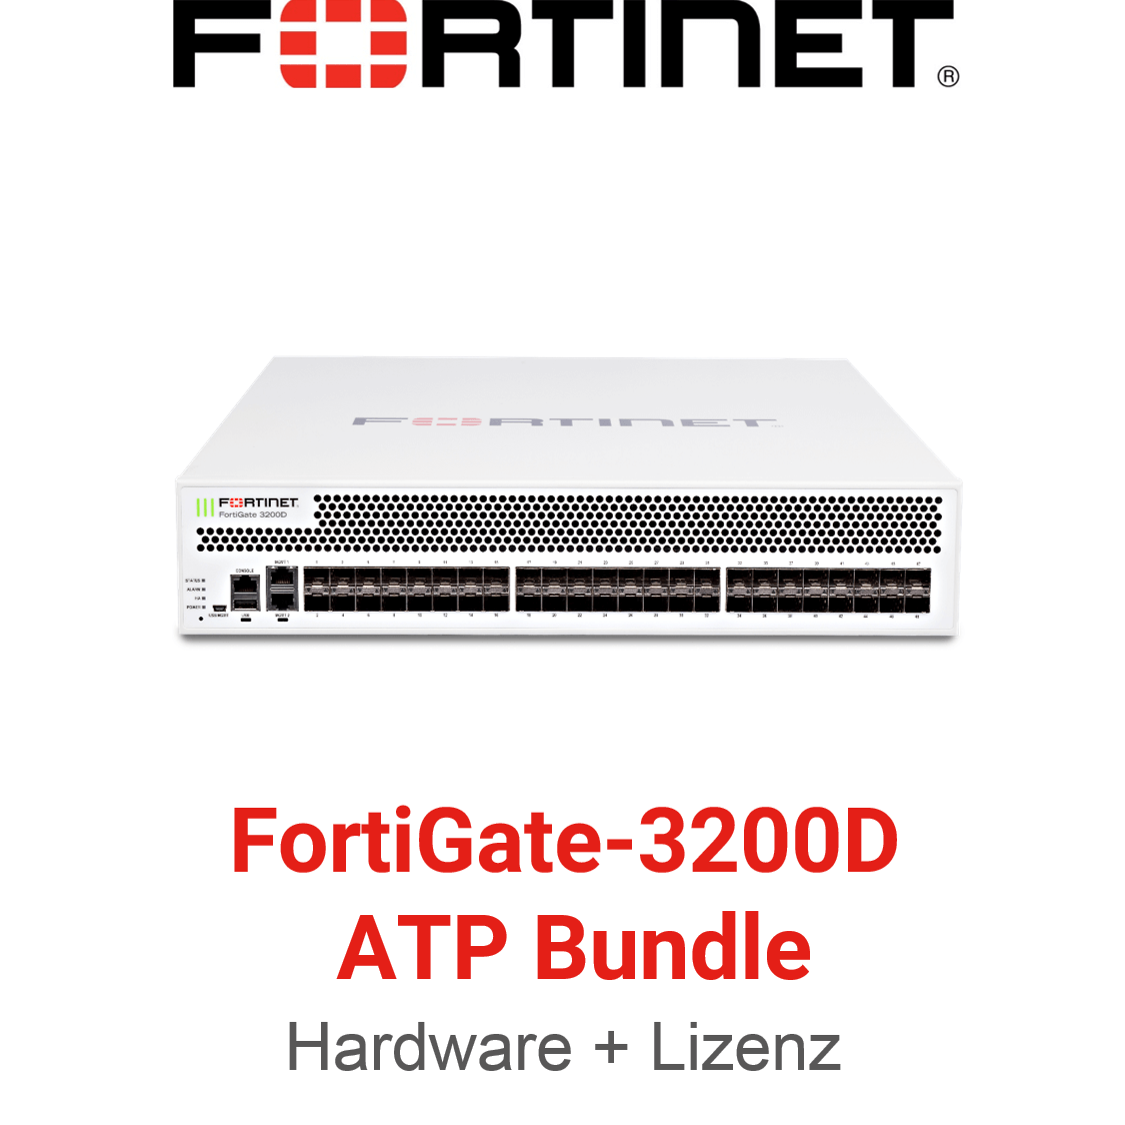 Fortinet FortiGate-3200D - ATP Bundle (Hardware + Lizenz)